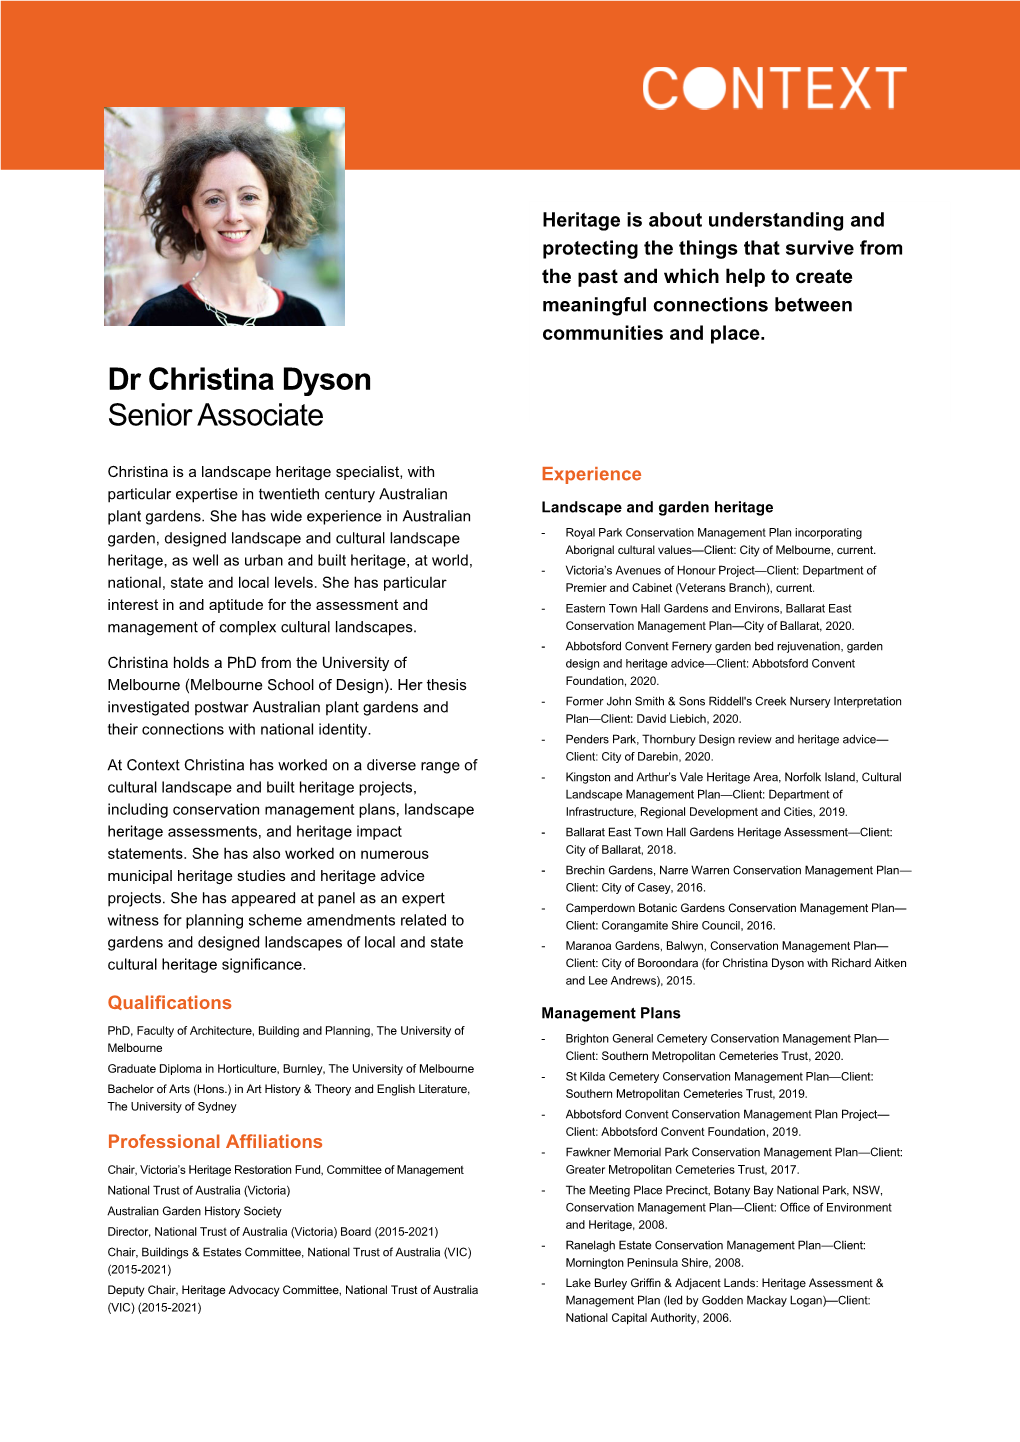 Dr Christina Dyson Senior Associate